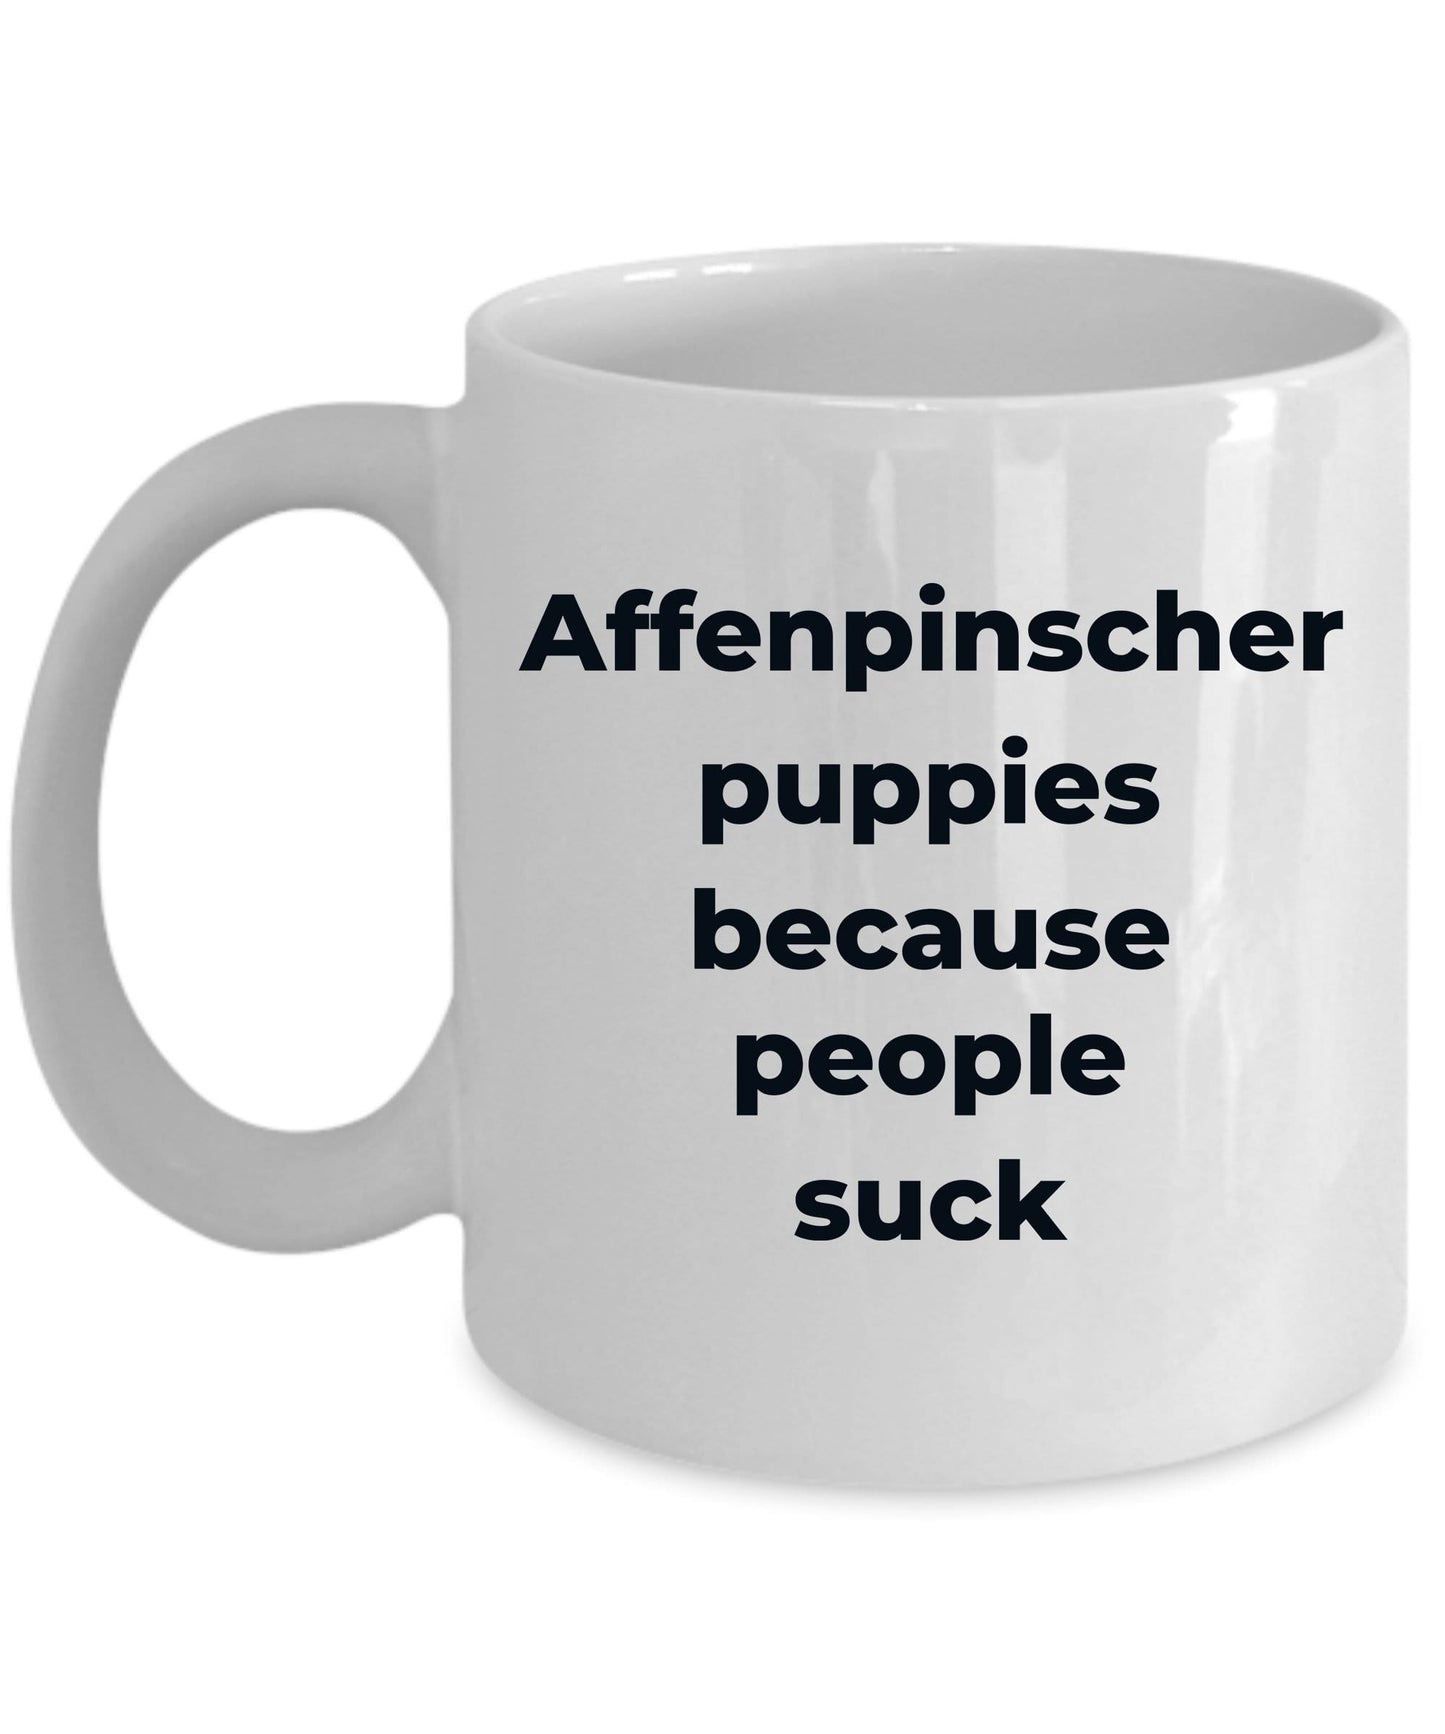 Affenpinscher dog funny coffee mug -Affenpinscher puppies because people suck